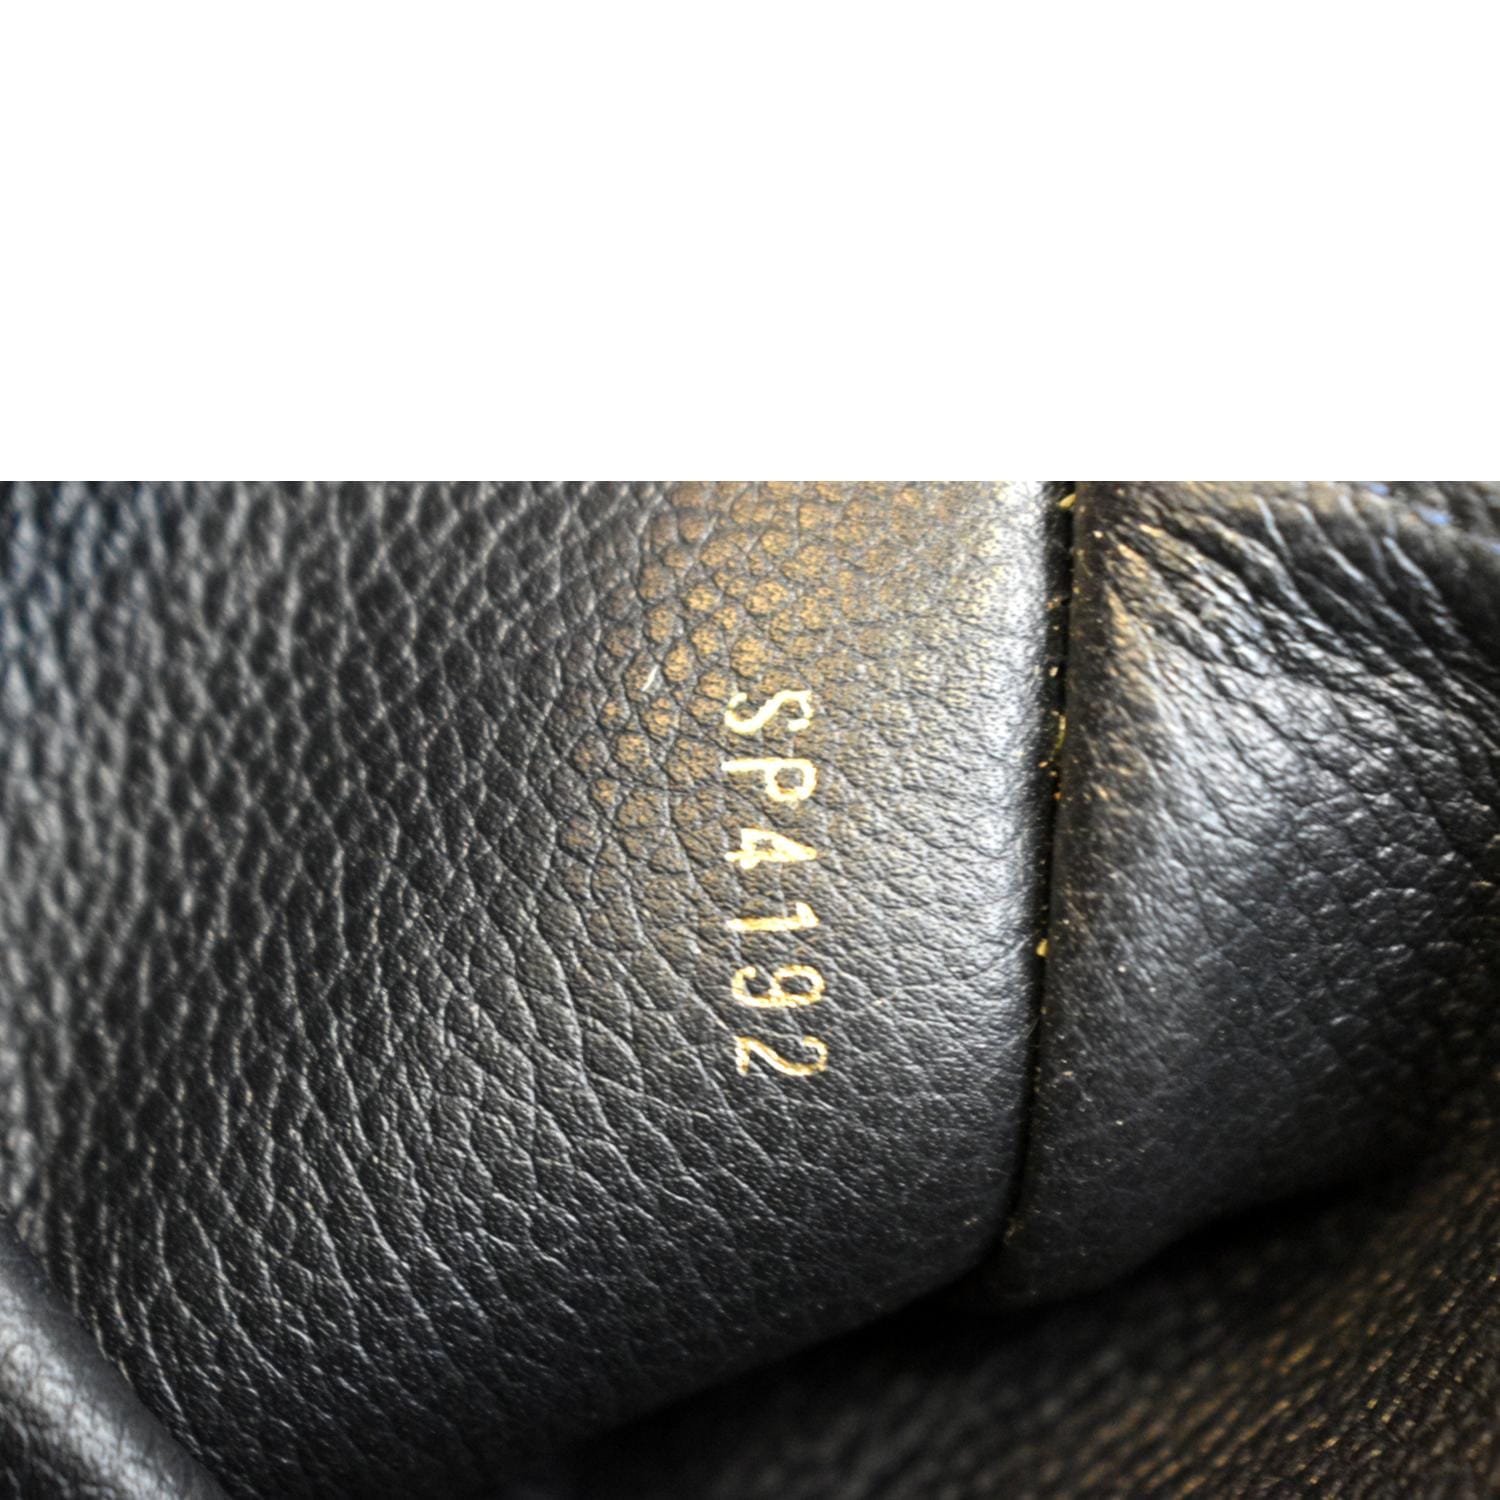 Louis Vuitton Empreinte Zippy Wallet - One Savvy Design Luxury